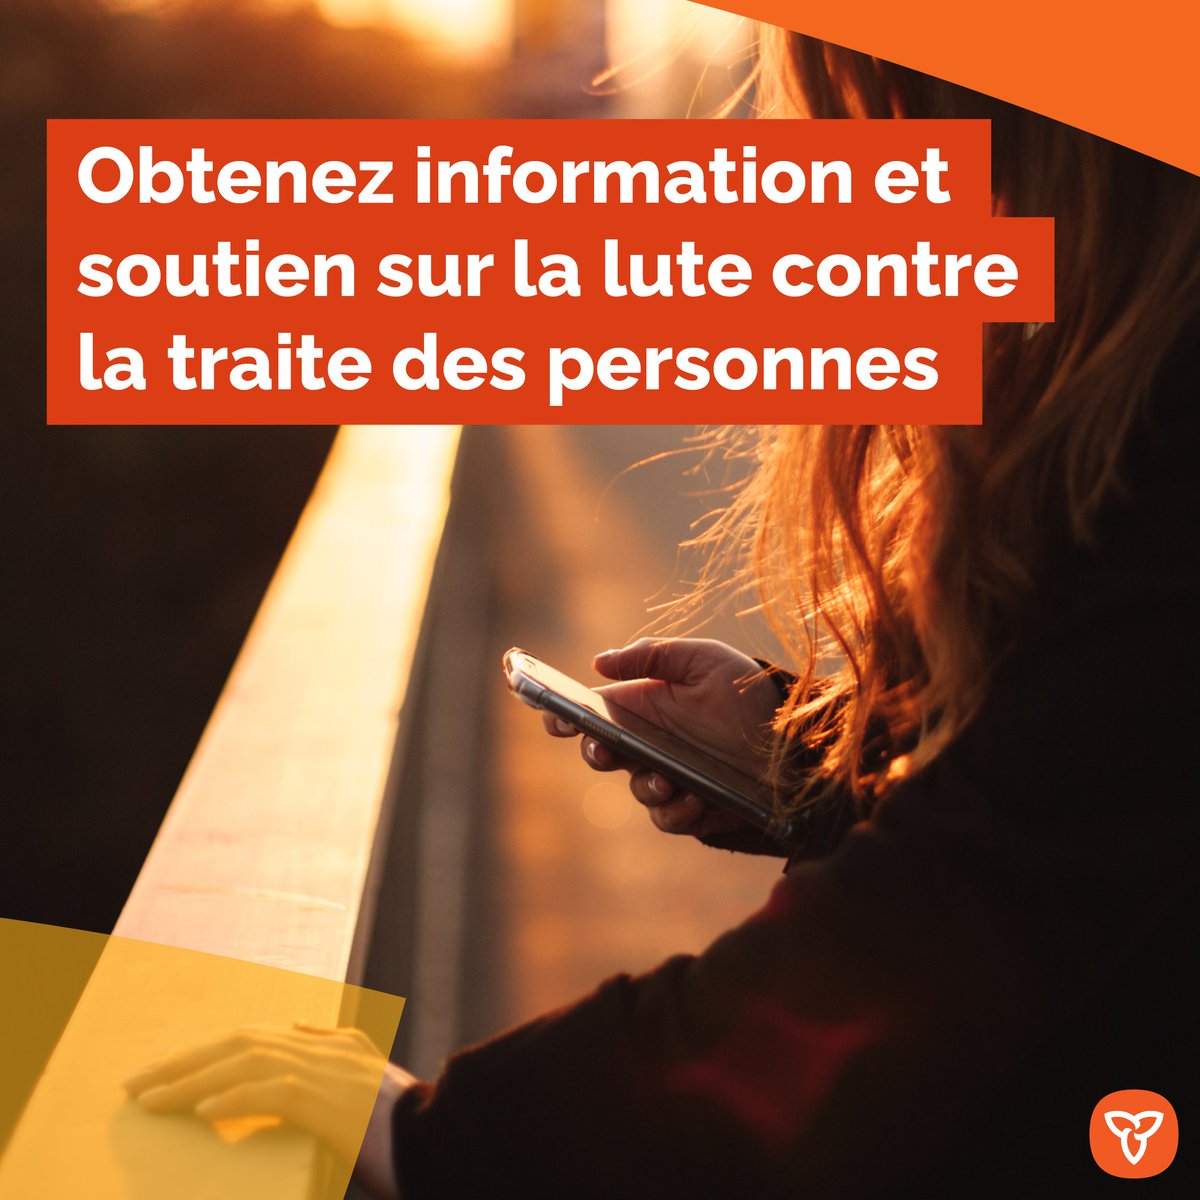 La Ligne d'urgence canadienne contre la traite des personnes est un service multilingue, confidentiel et accessible 24 heures sur 24 et 7 jours sur 7, destiné à aider les victimes et les survivants de la #TraiteDesPersonnes. 👇